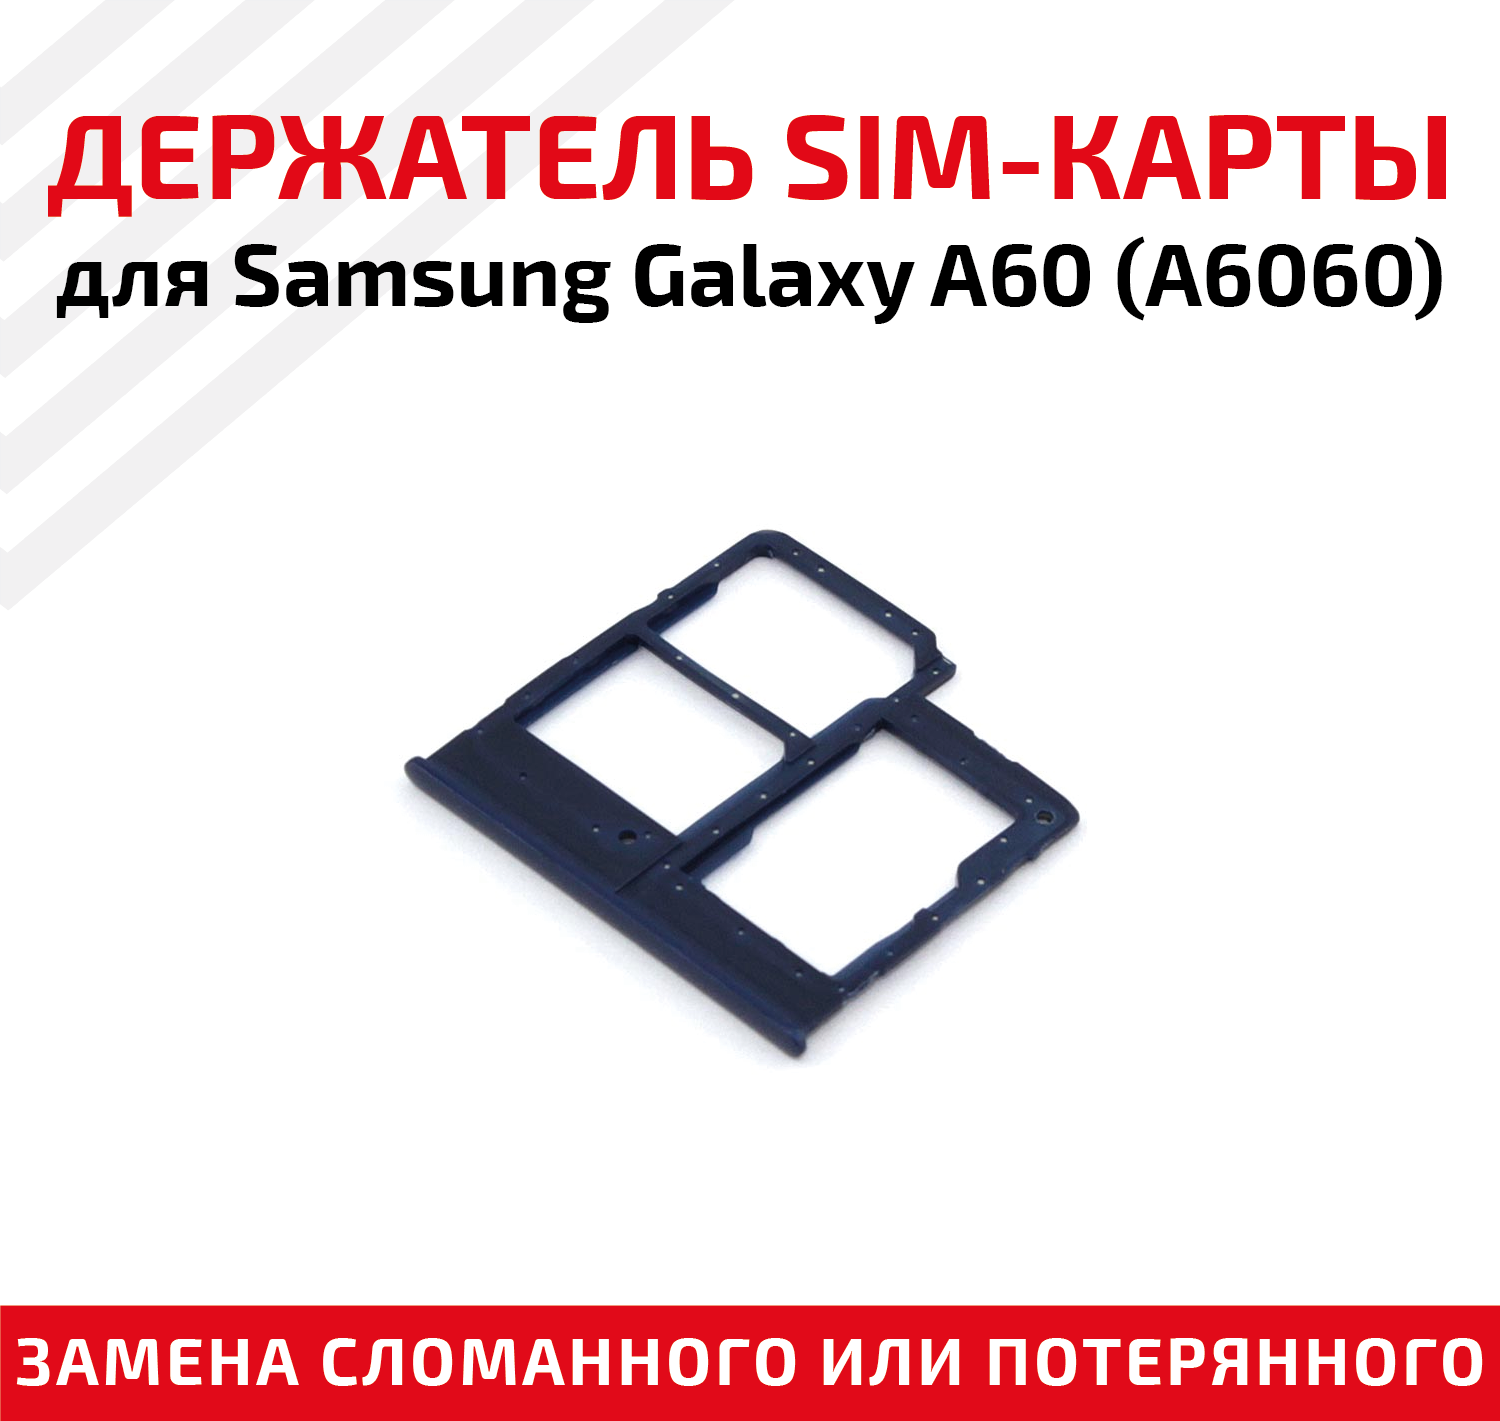 Лоток (держатель, контейнер, слот) SIM-карты для мобильного телефона (смартфона) Samsung Galaxy A60 (A6060), синий